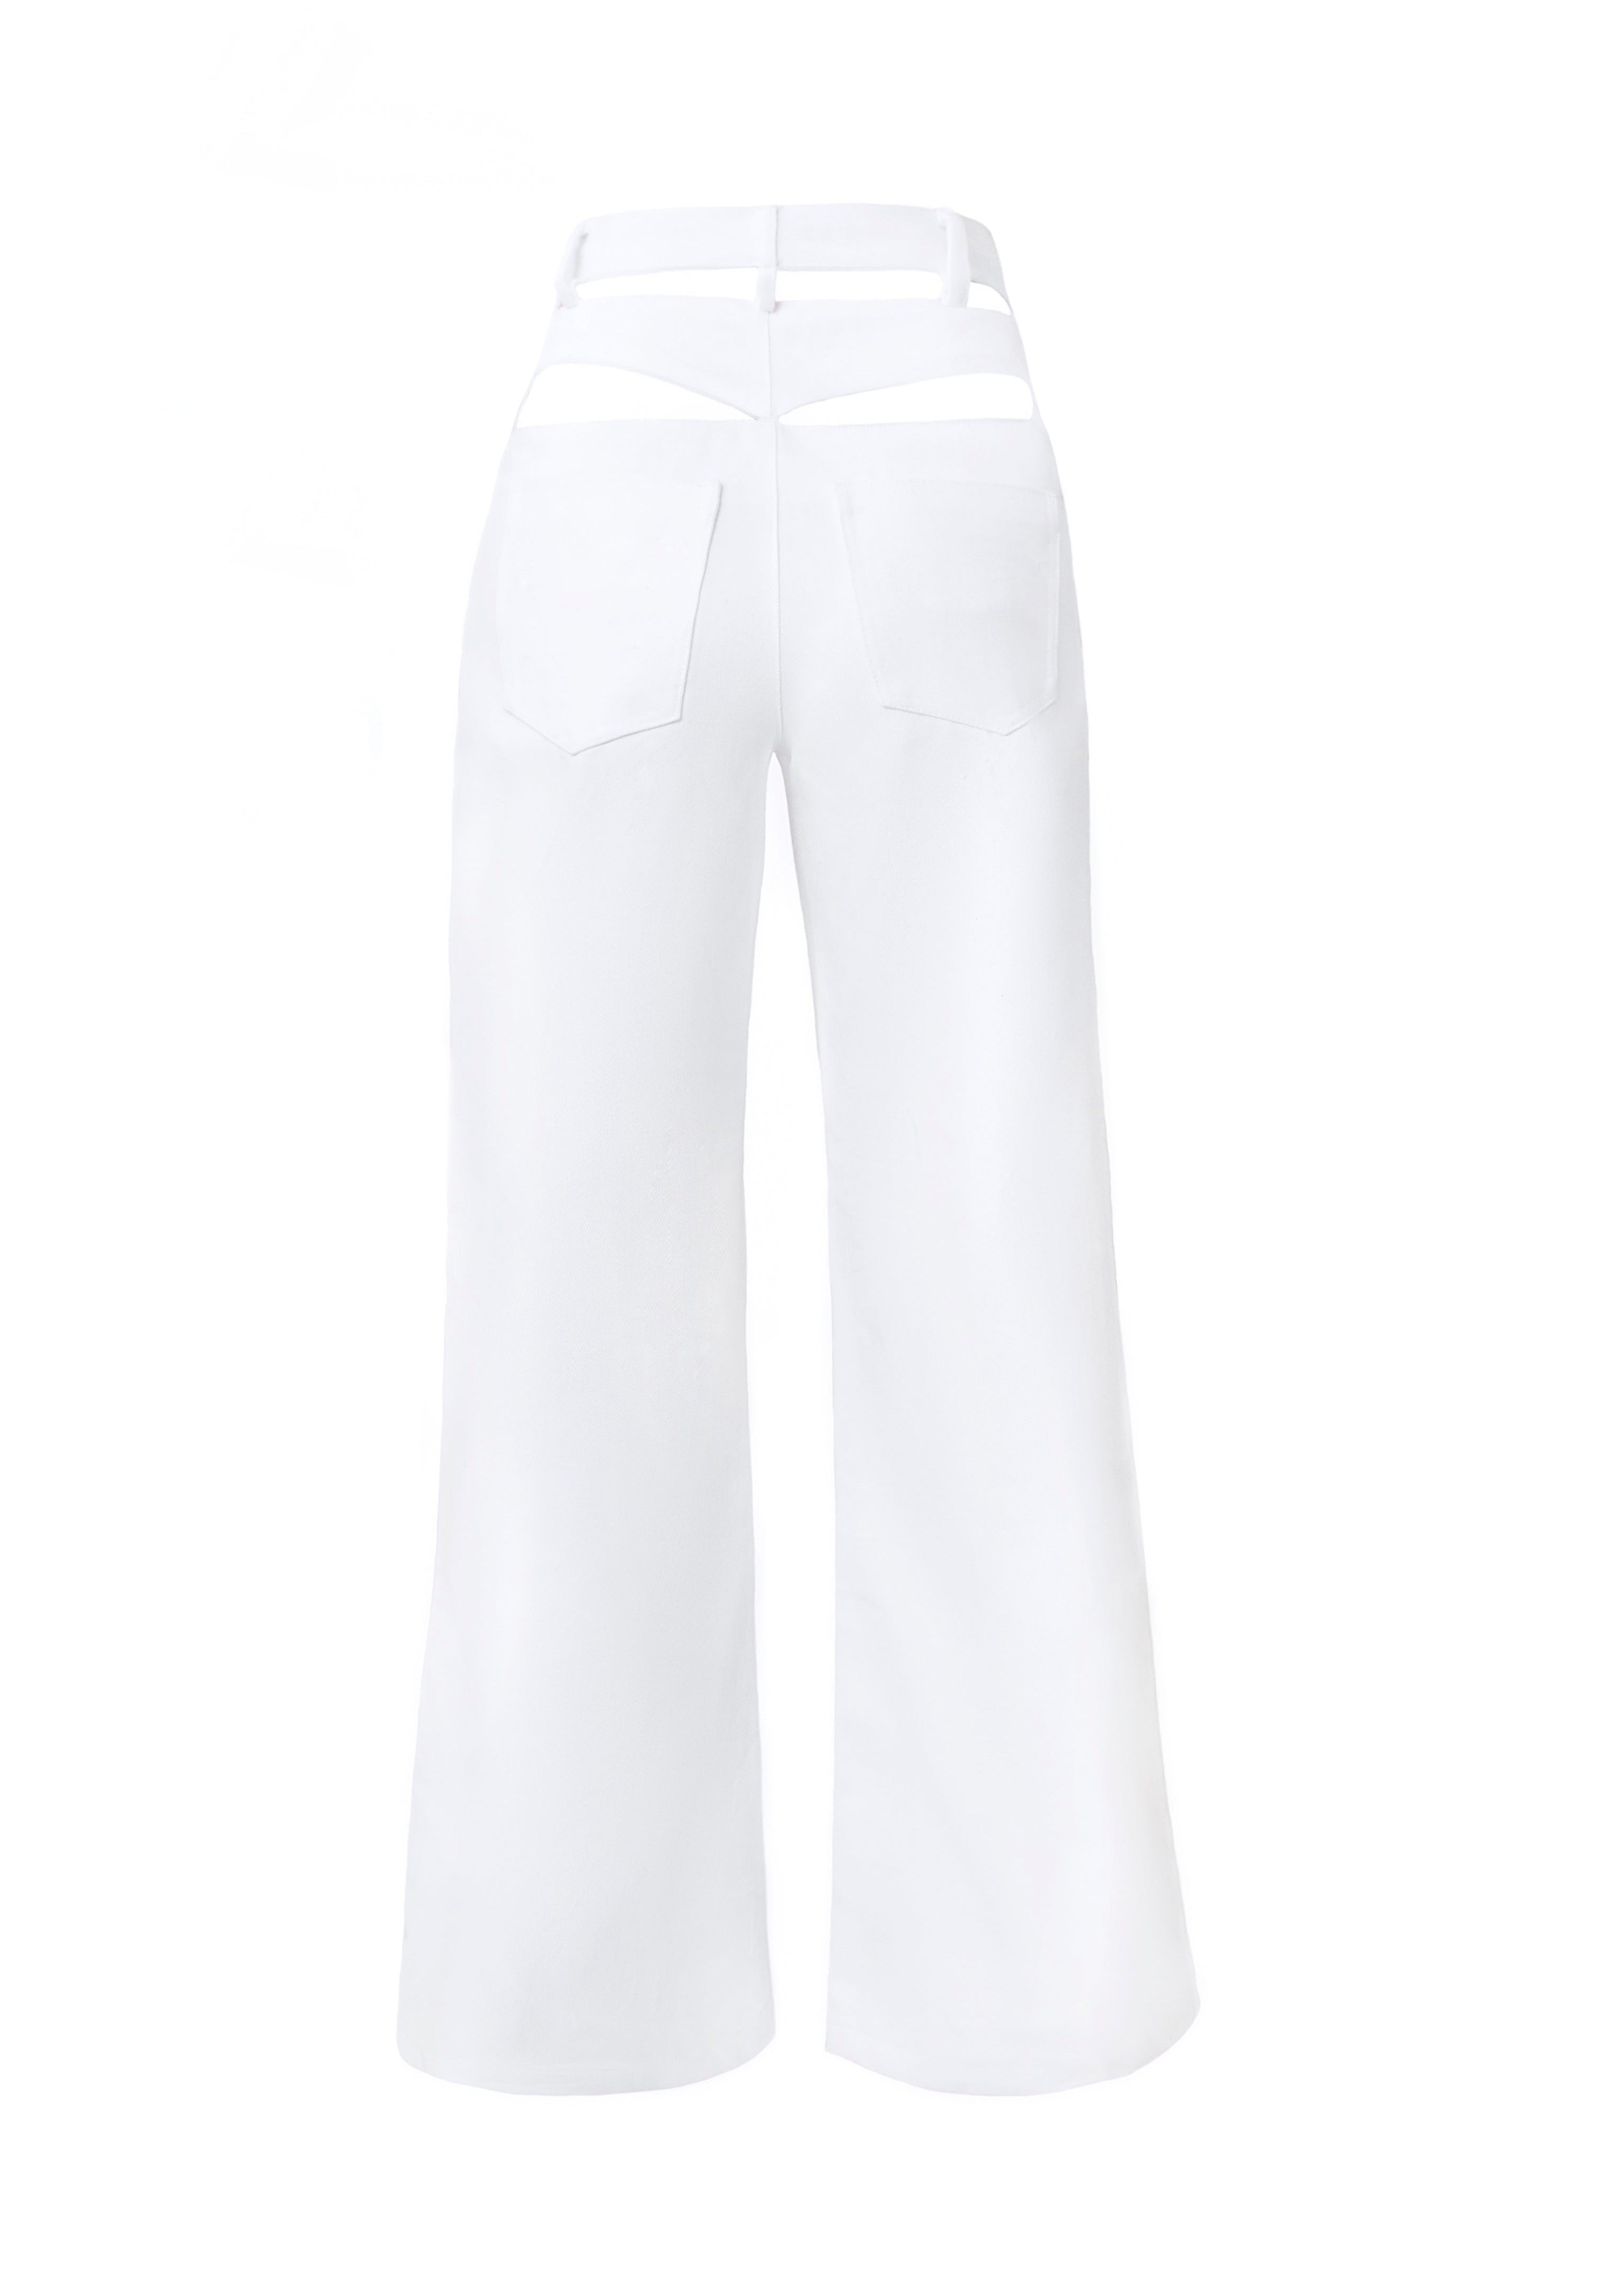 White Cutout Pants